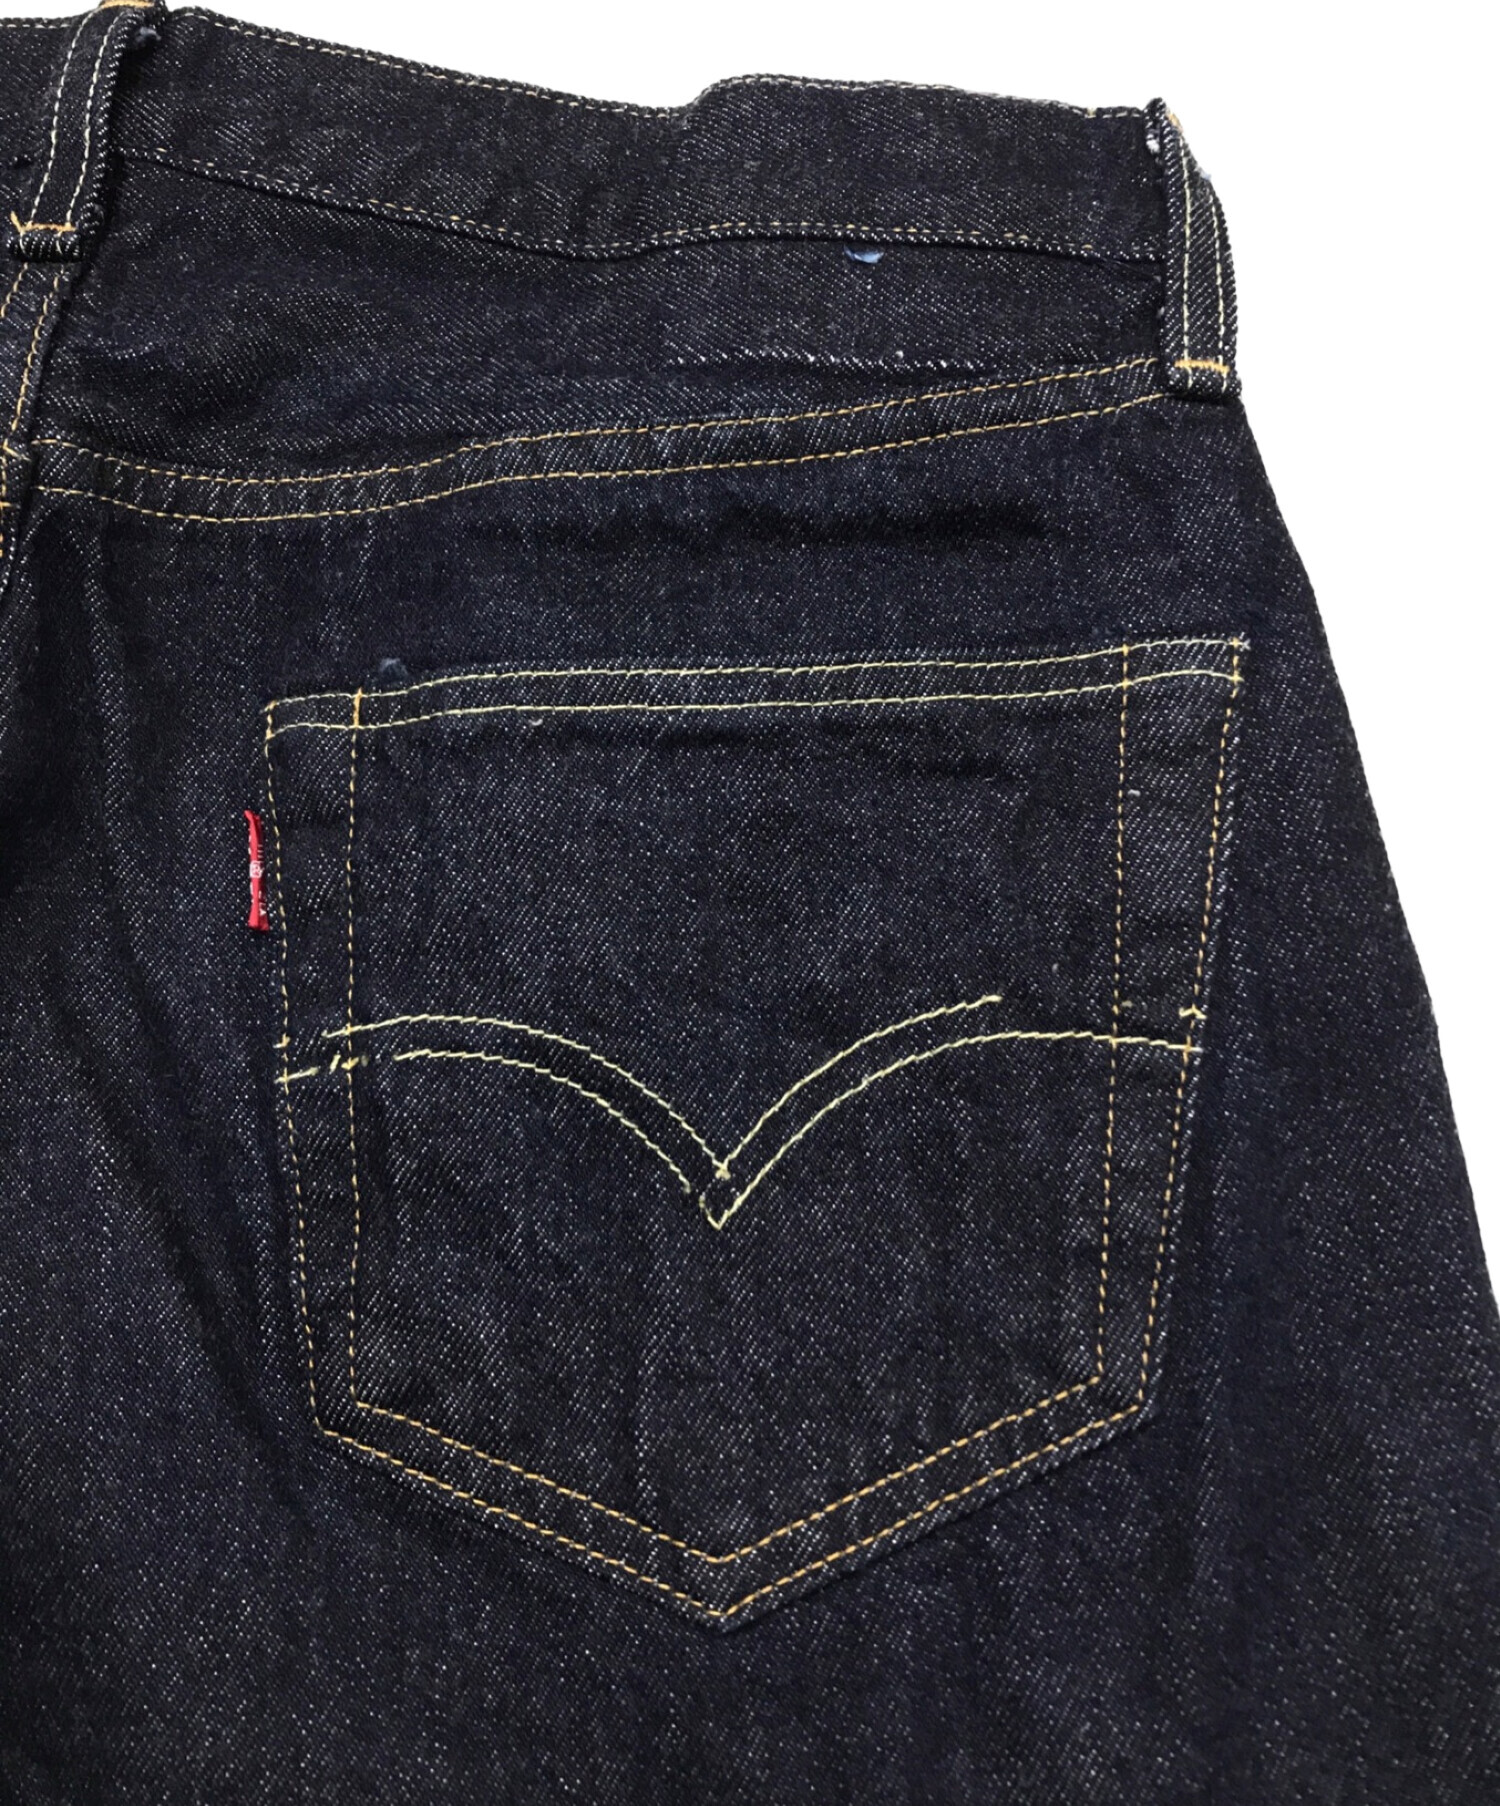 LEVI'S VINTAGE CLOTHING (リーバイスヴィンテージクロージング) 55年501XX復刻デニムパンツ インディゴ  サイズ:83.5cm (W33)